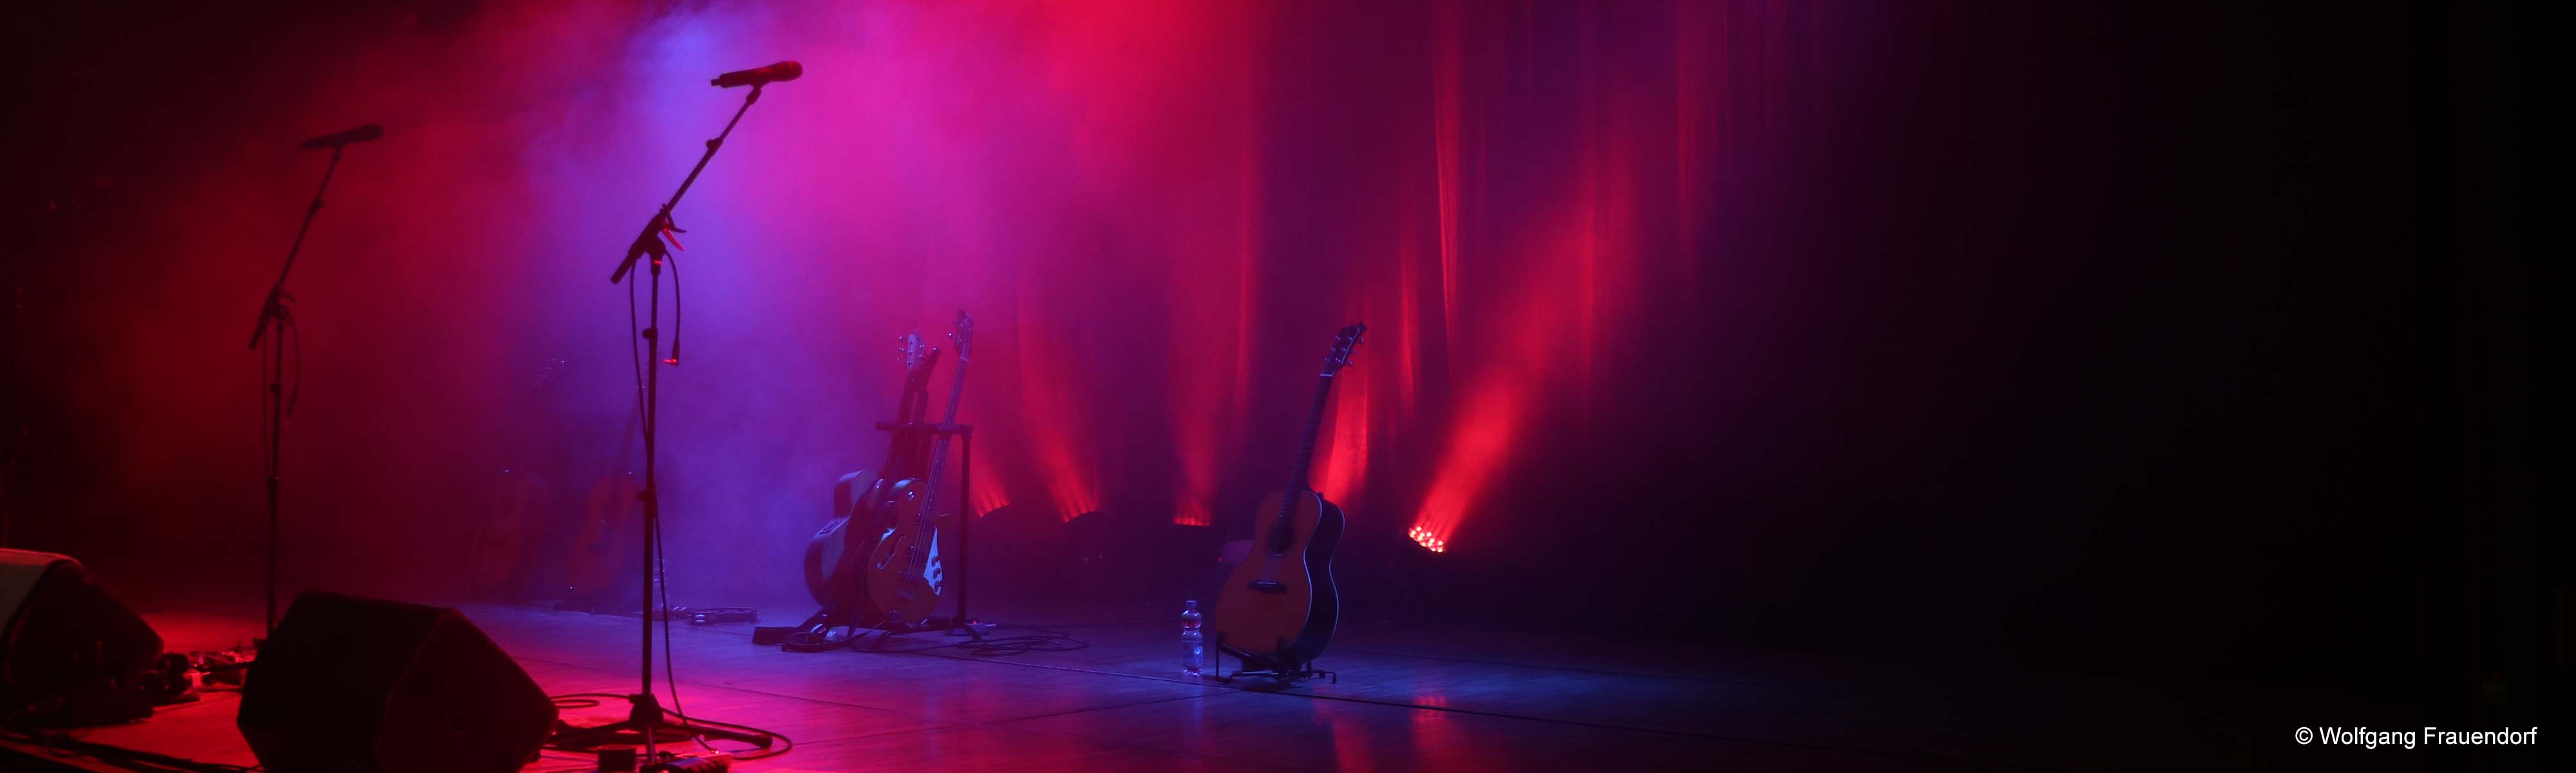 Bühnenbild mit roten Scheinwerfern Gitarren Mikrofone